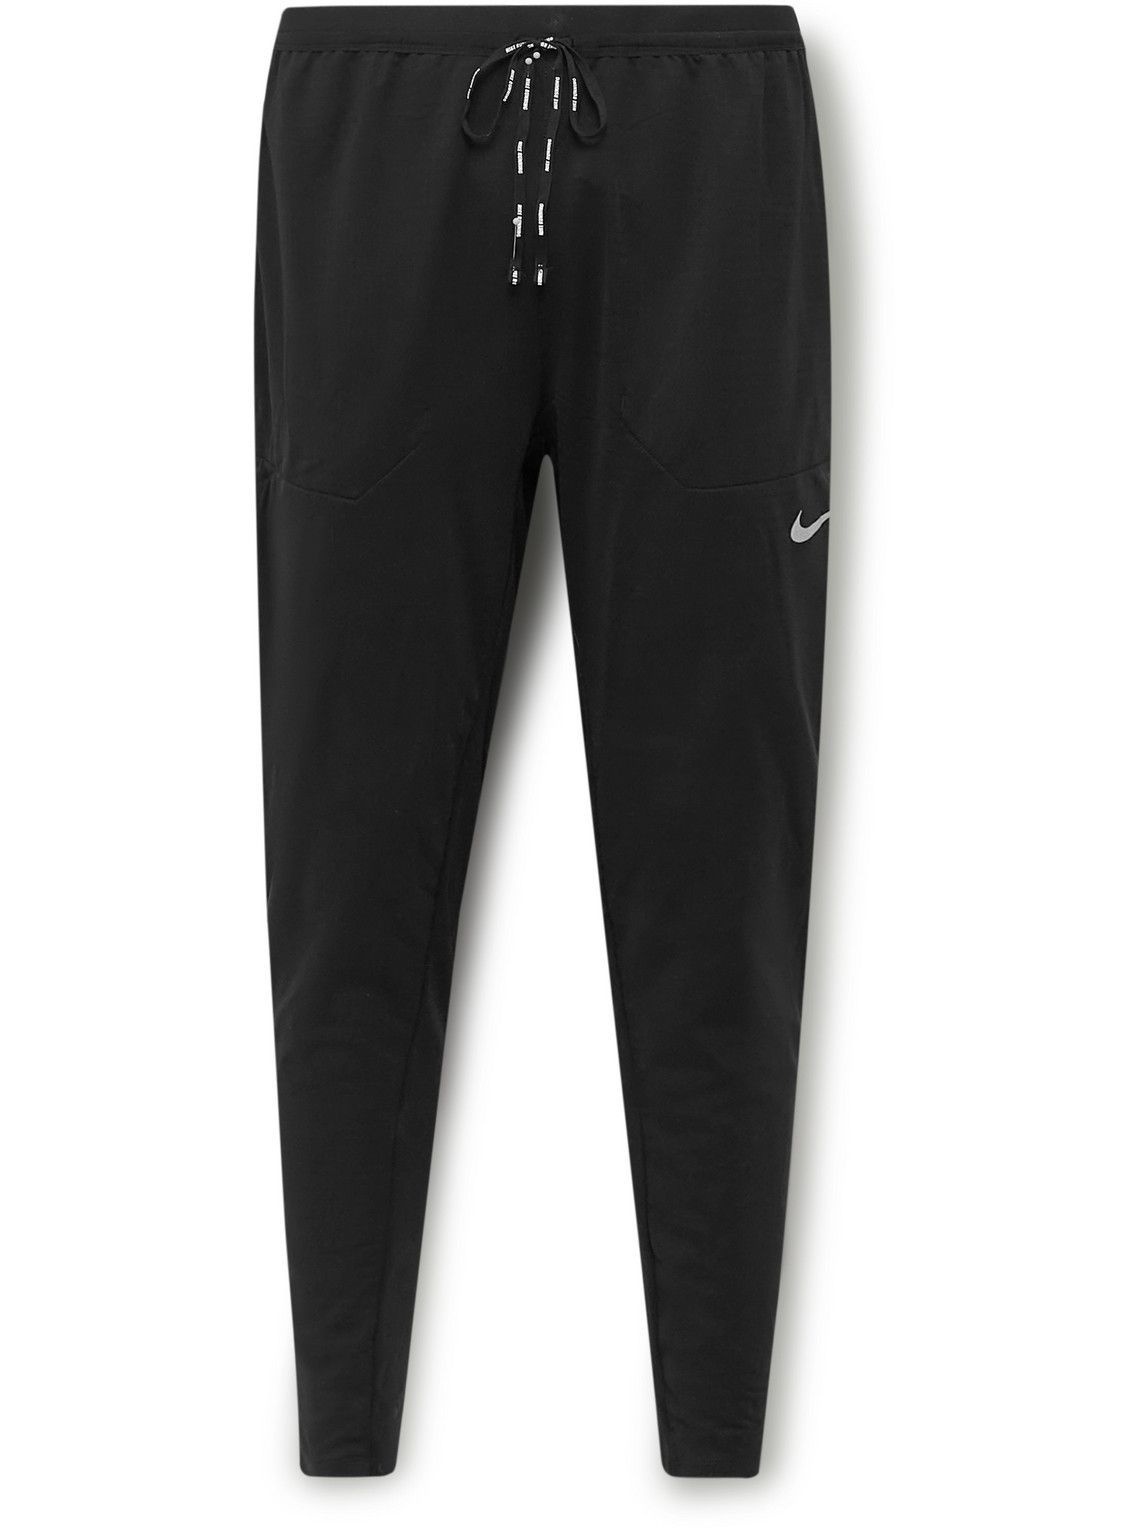 Nike Dri-Fit Tapered Long Pants Black